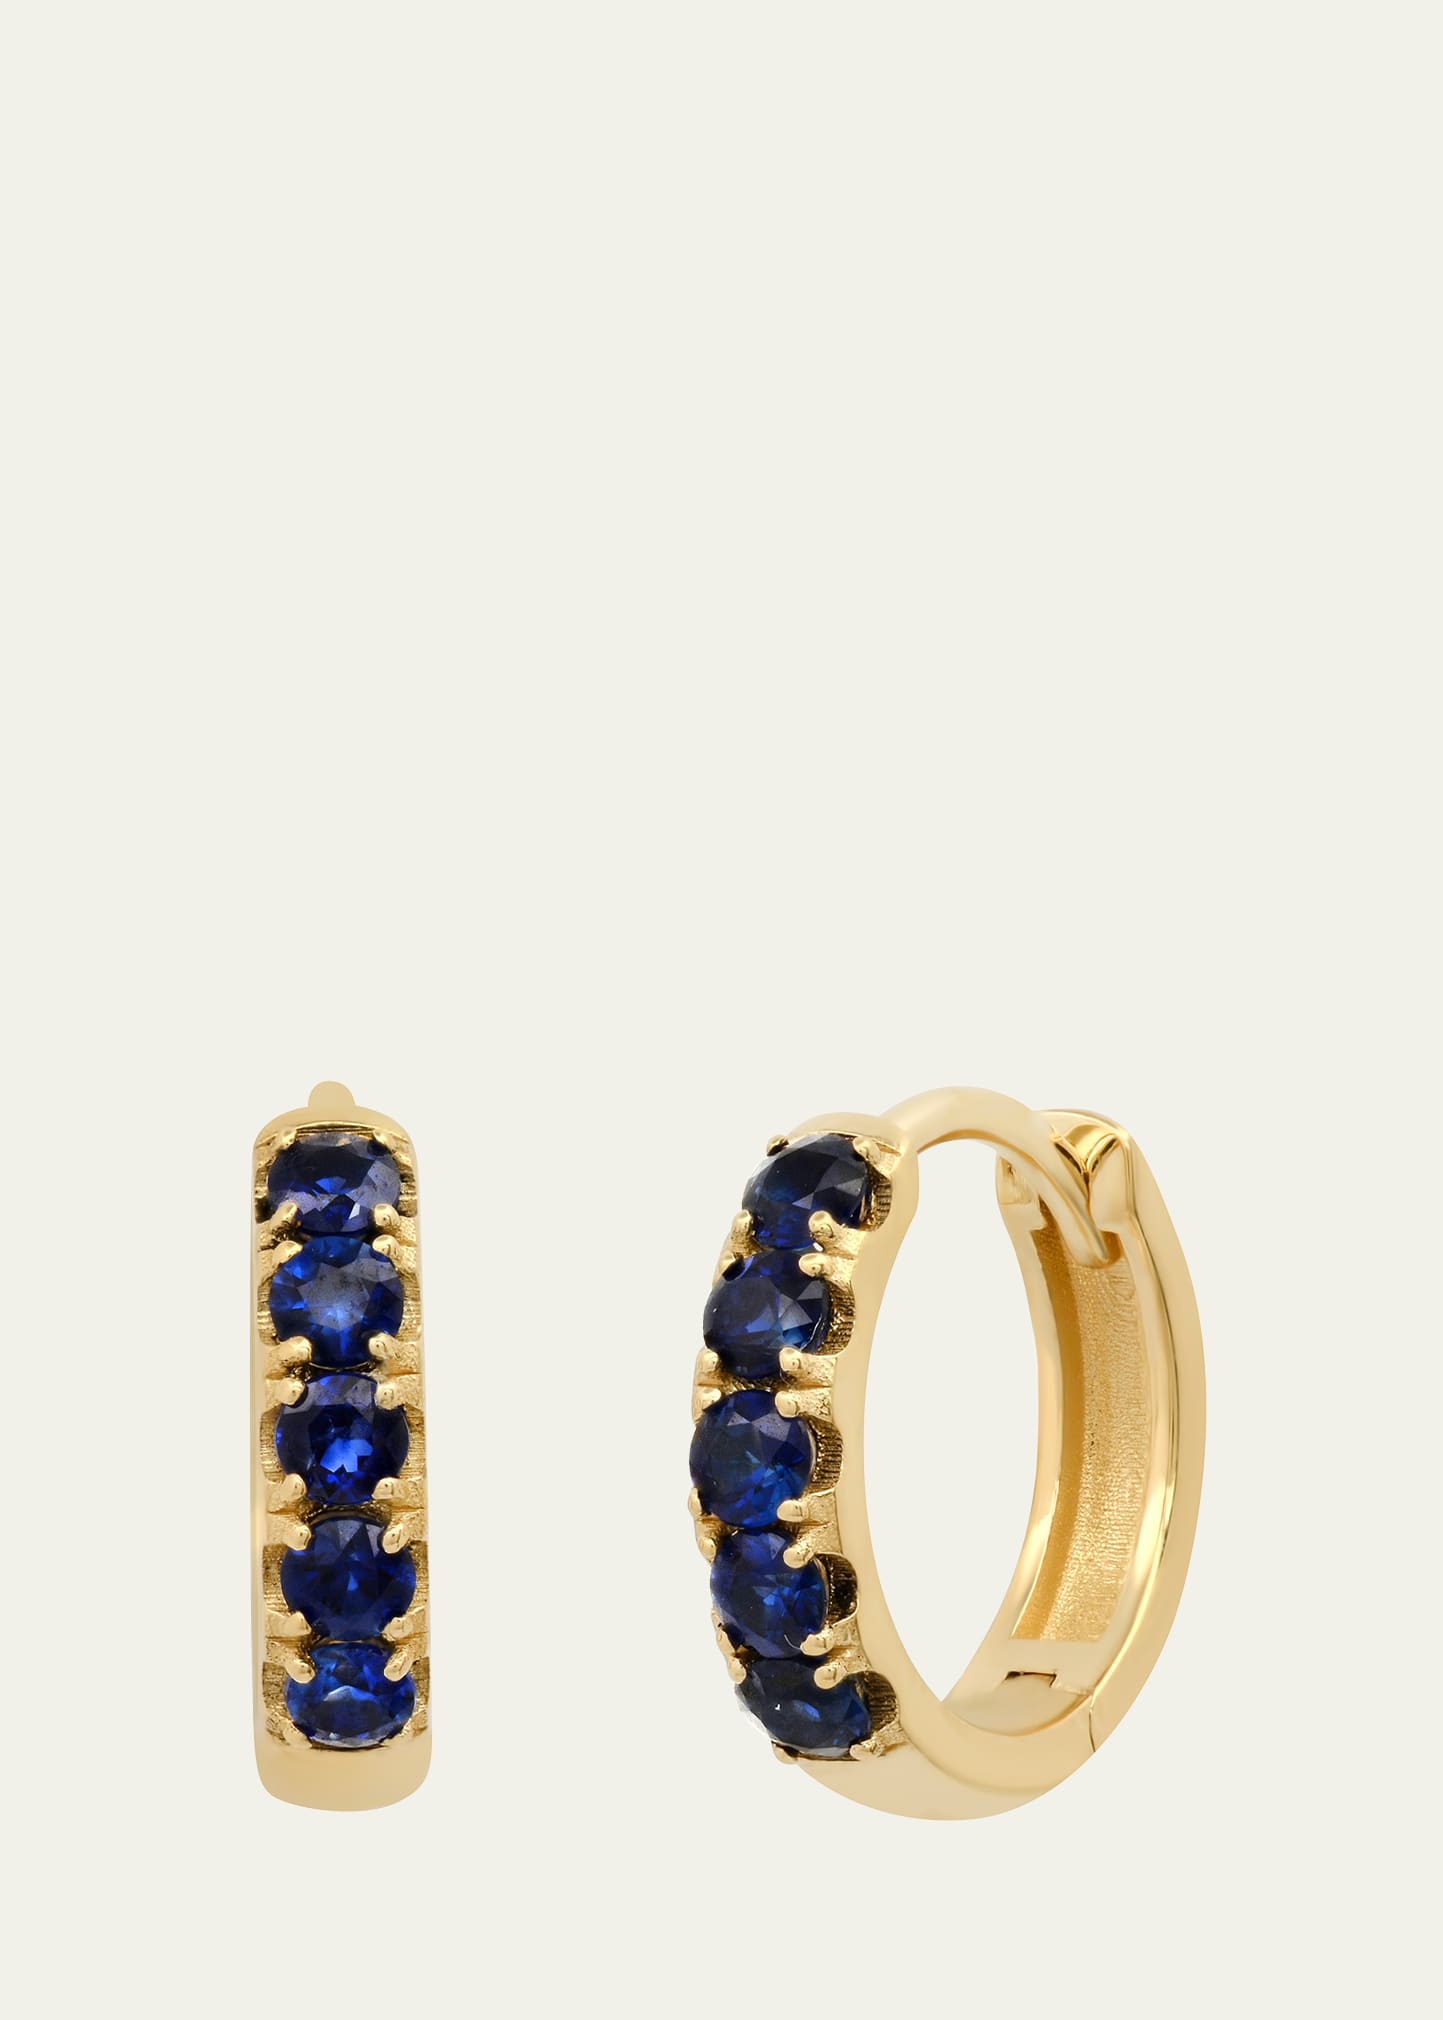 Andrea Fohrman Chubby Blue Sapphire Huggie Earrings